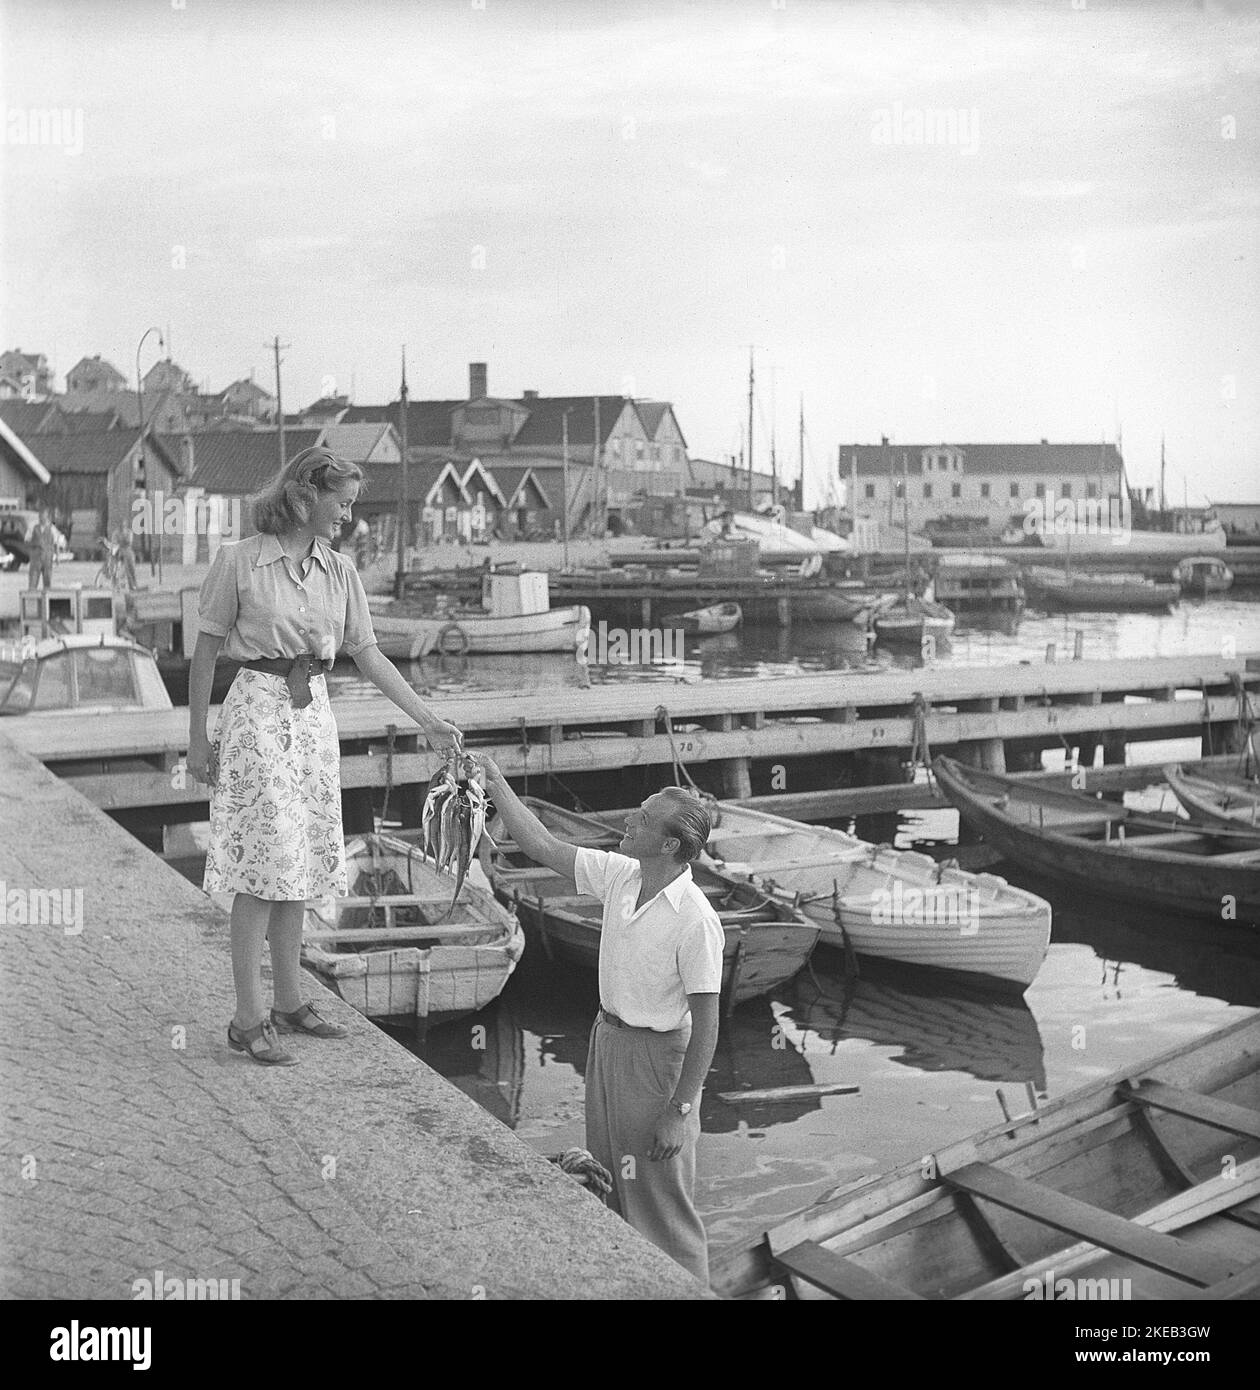 Dans le 1940s. Une scène prise pendant le tournage d'un film à Bohuslän Suède. Ils timides pêcheur joué par Olle Tärna donne la fille de ses rêves poisson. Une sorte de tribunal qui aurait pu mener à une romance. Suède 1947. Kristoffersson AD1-10 Banque D'Images